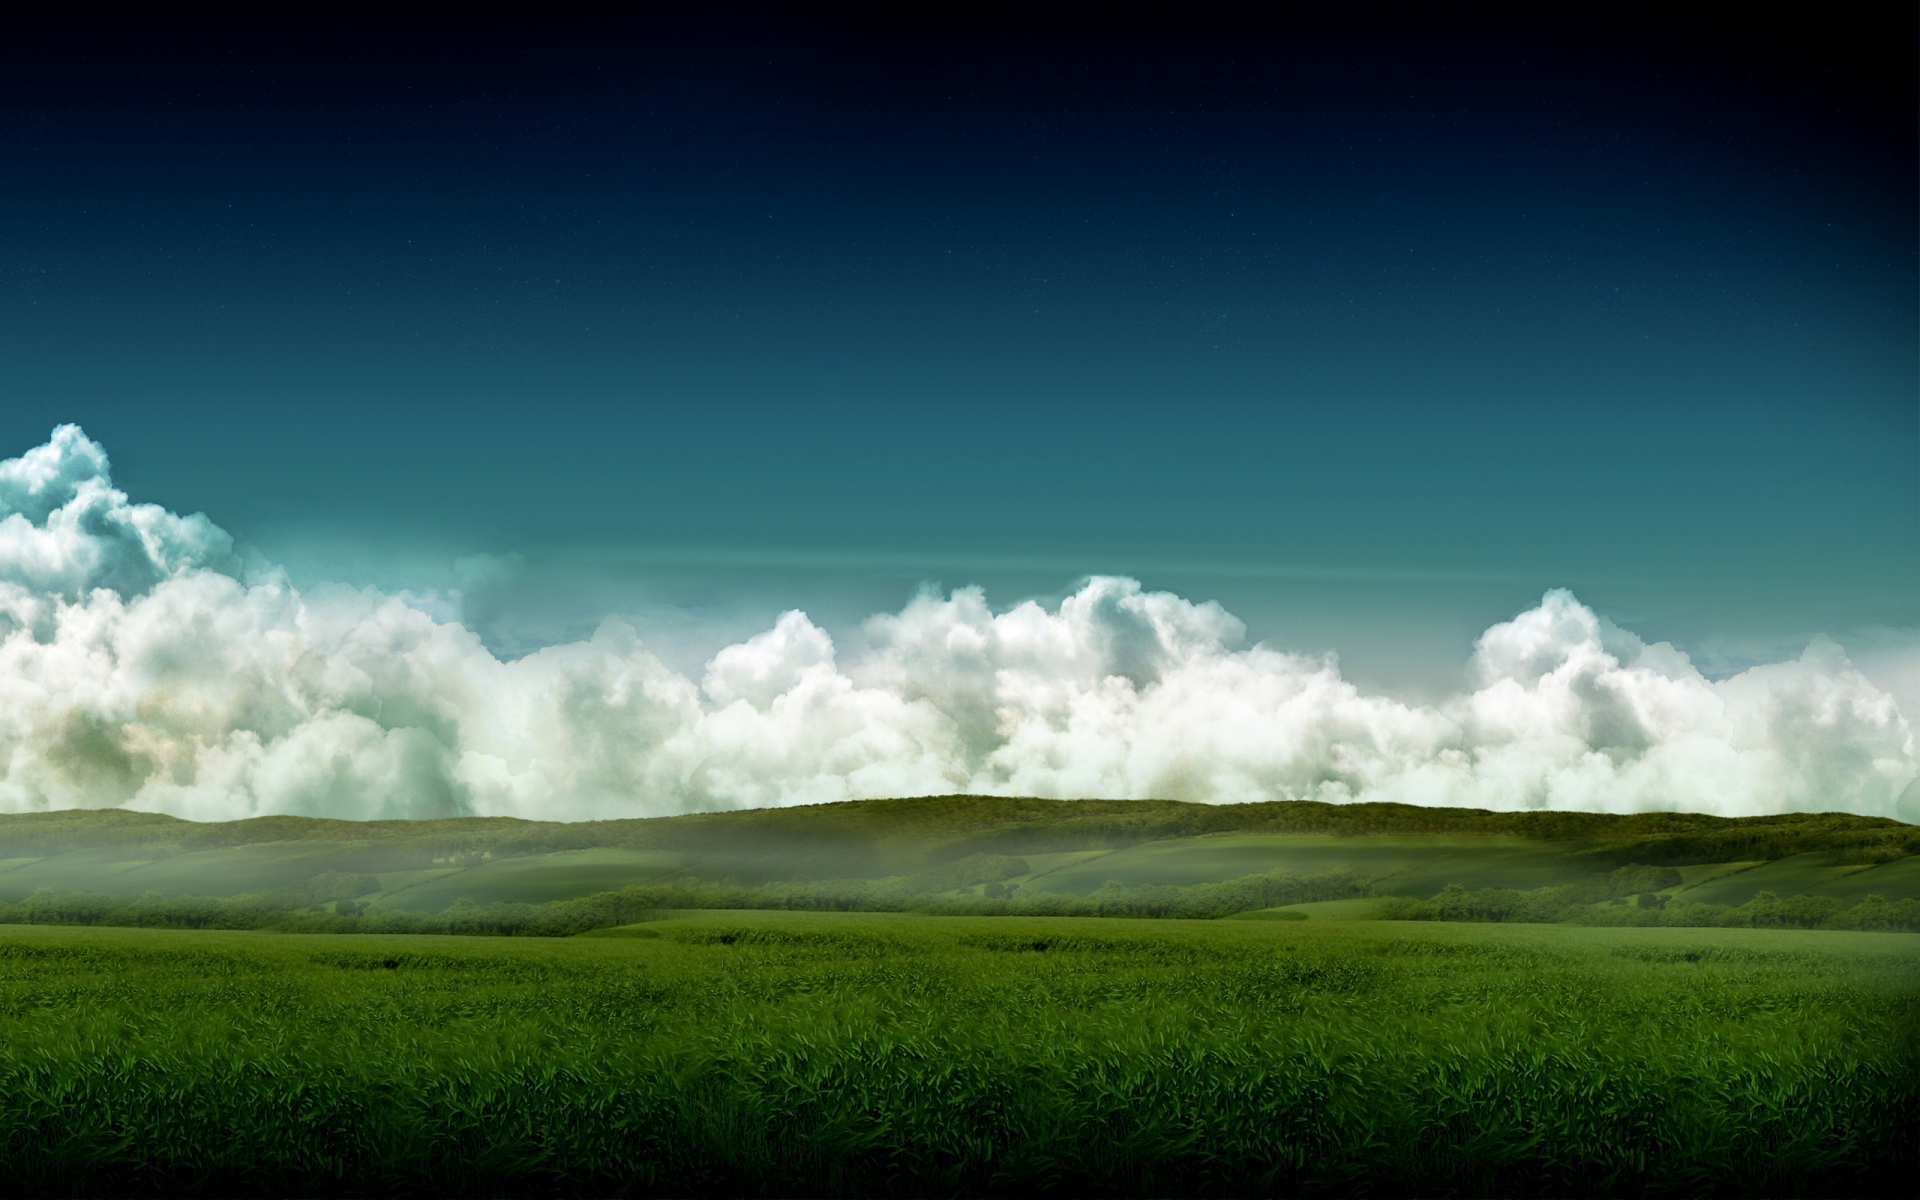 Картинки Луга, поля, облака, небо, объем, цвета, дымка, трава, лето, зеленый, след фото и обои на рабочий стол